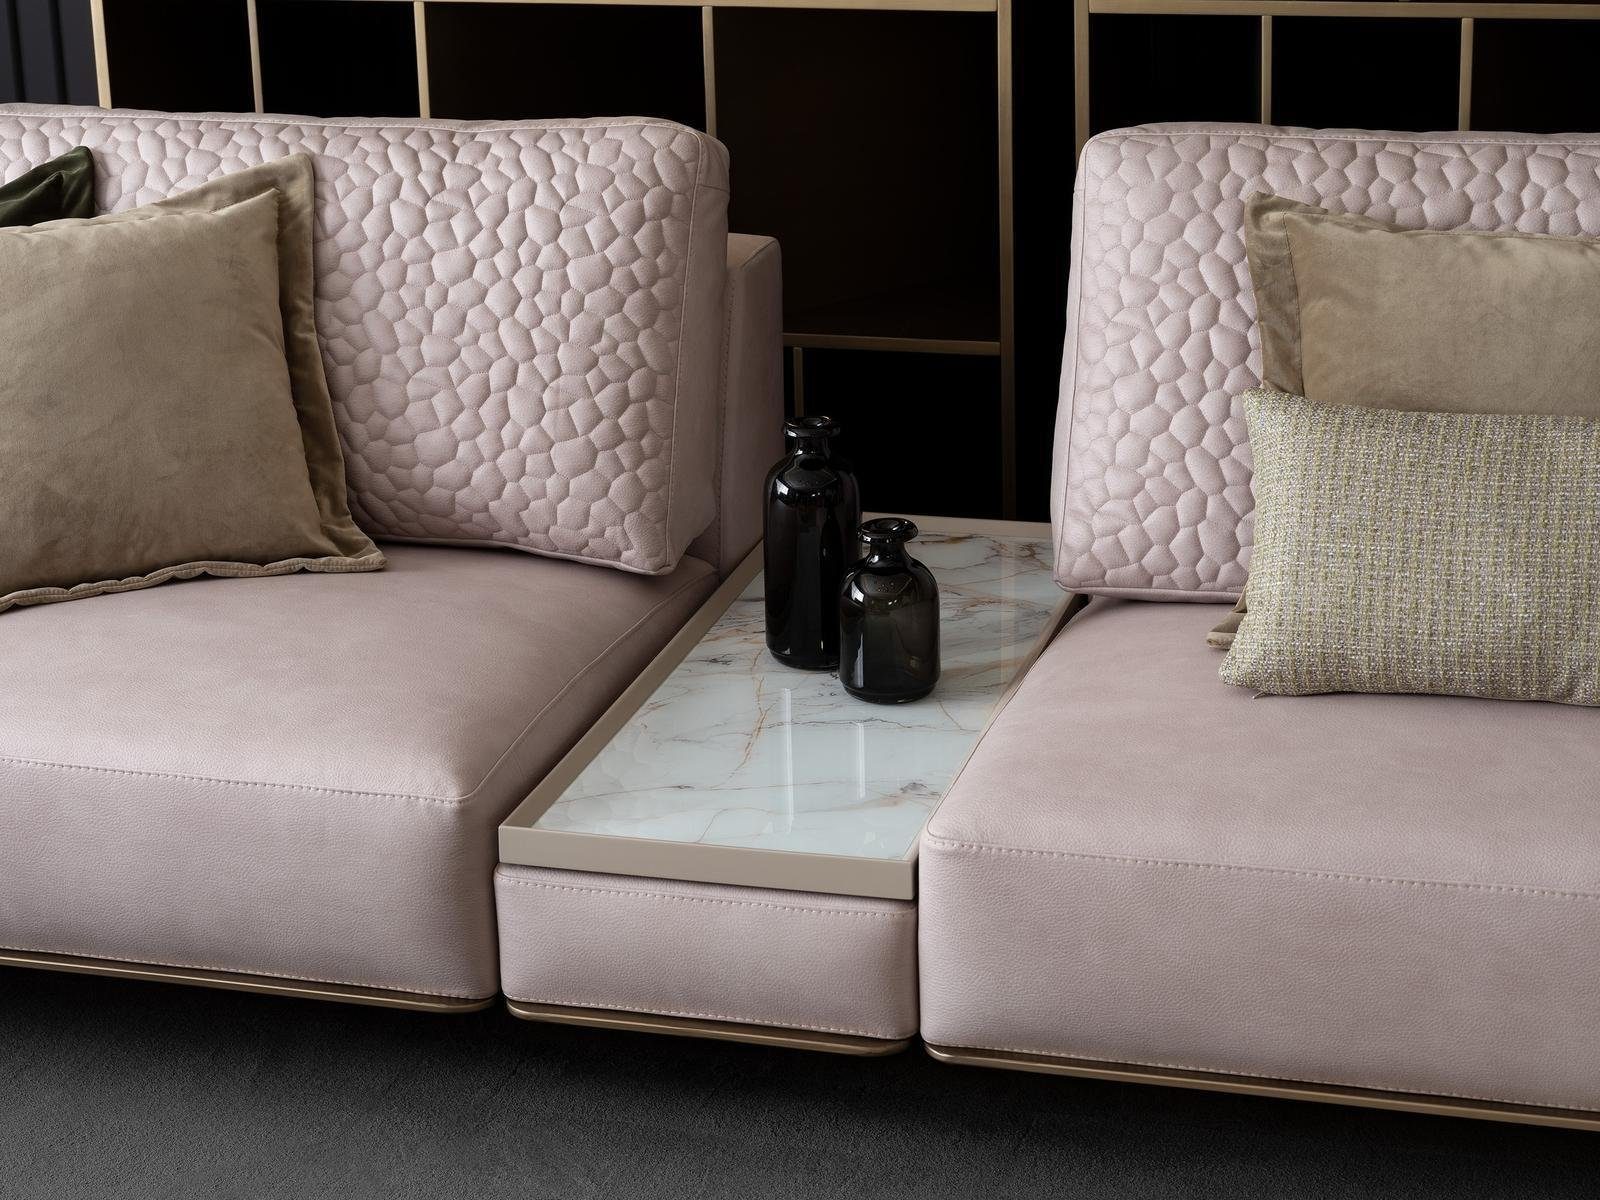 Rosa Made JVmoebel 1 Sofas Couchen, Teile, Stilvolle in Sitzer Europa 3 Modernen Design 3-Sitzer Wohnzimmer Sofa